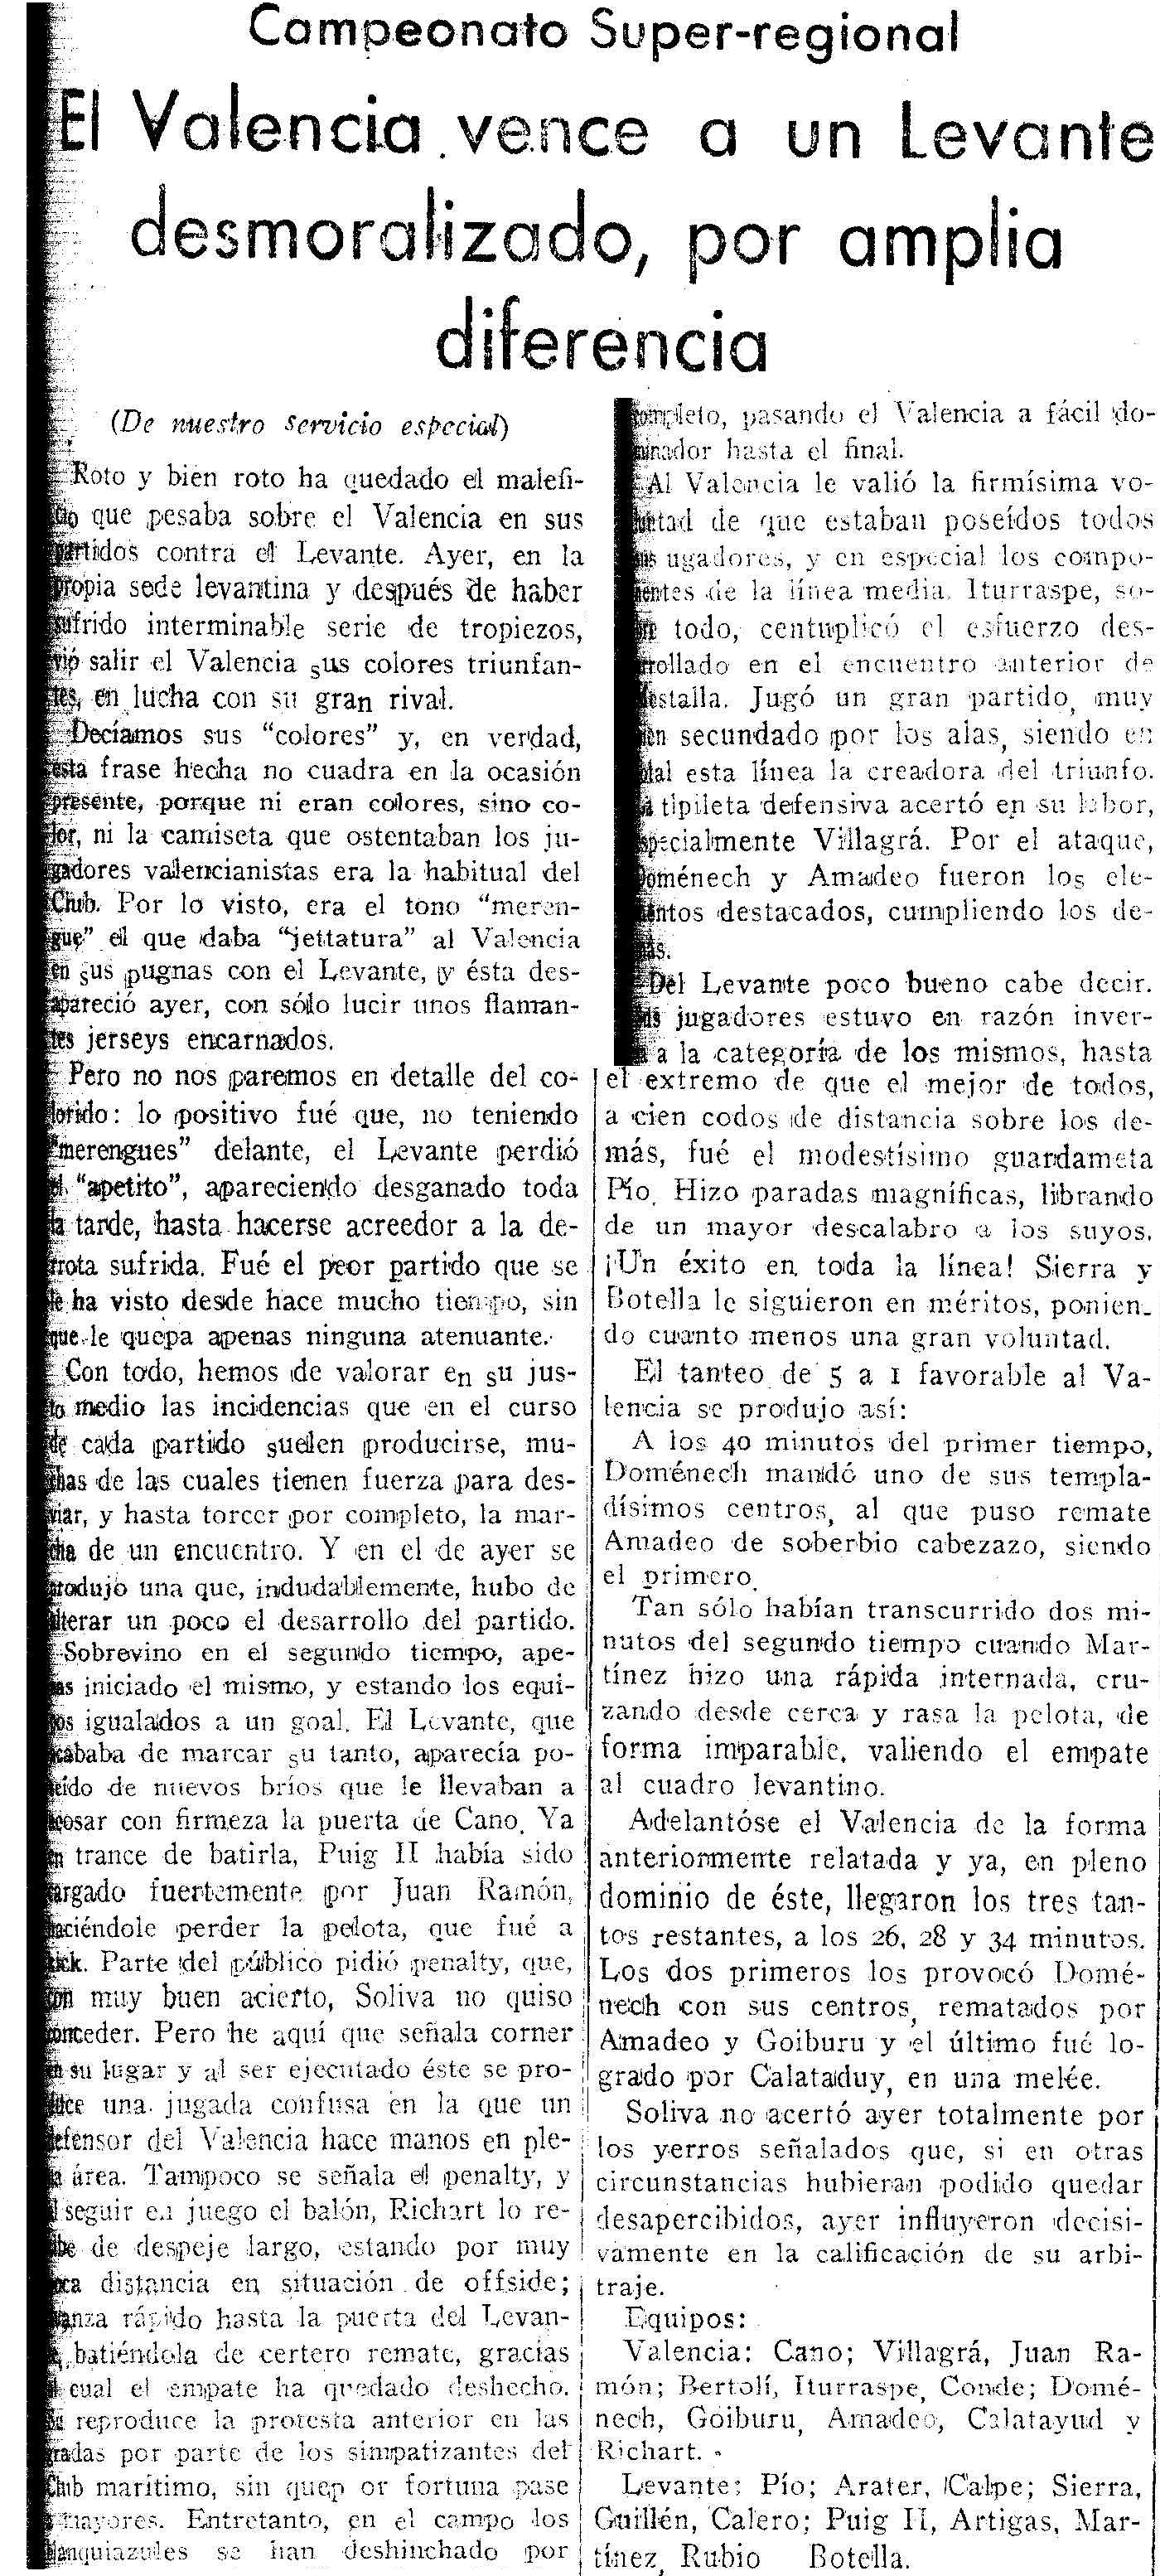 1936.11.29 (29 ноября 1936), Леванте - Валенсия, 1-5.png